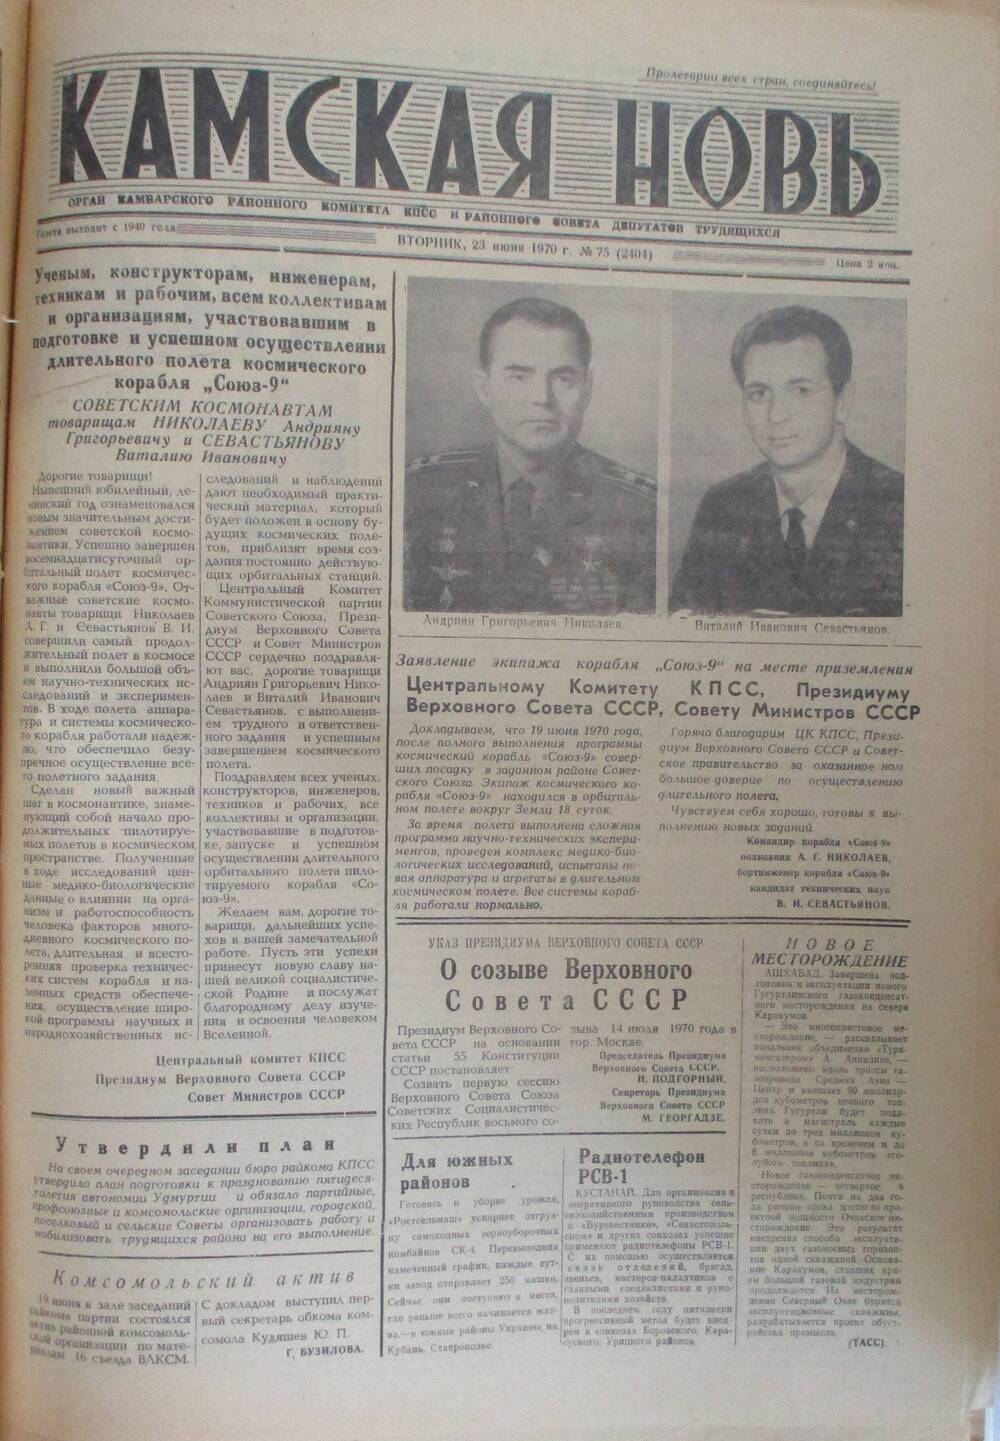 Газеты Камская новь за 1970 год. с №1 по №83., №75.